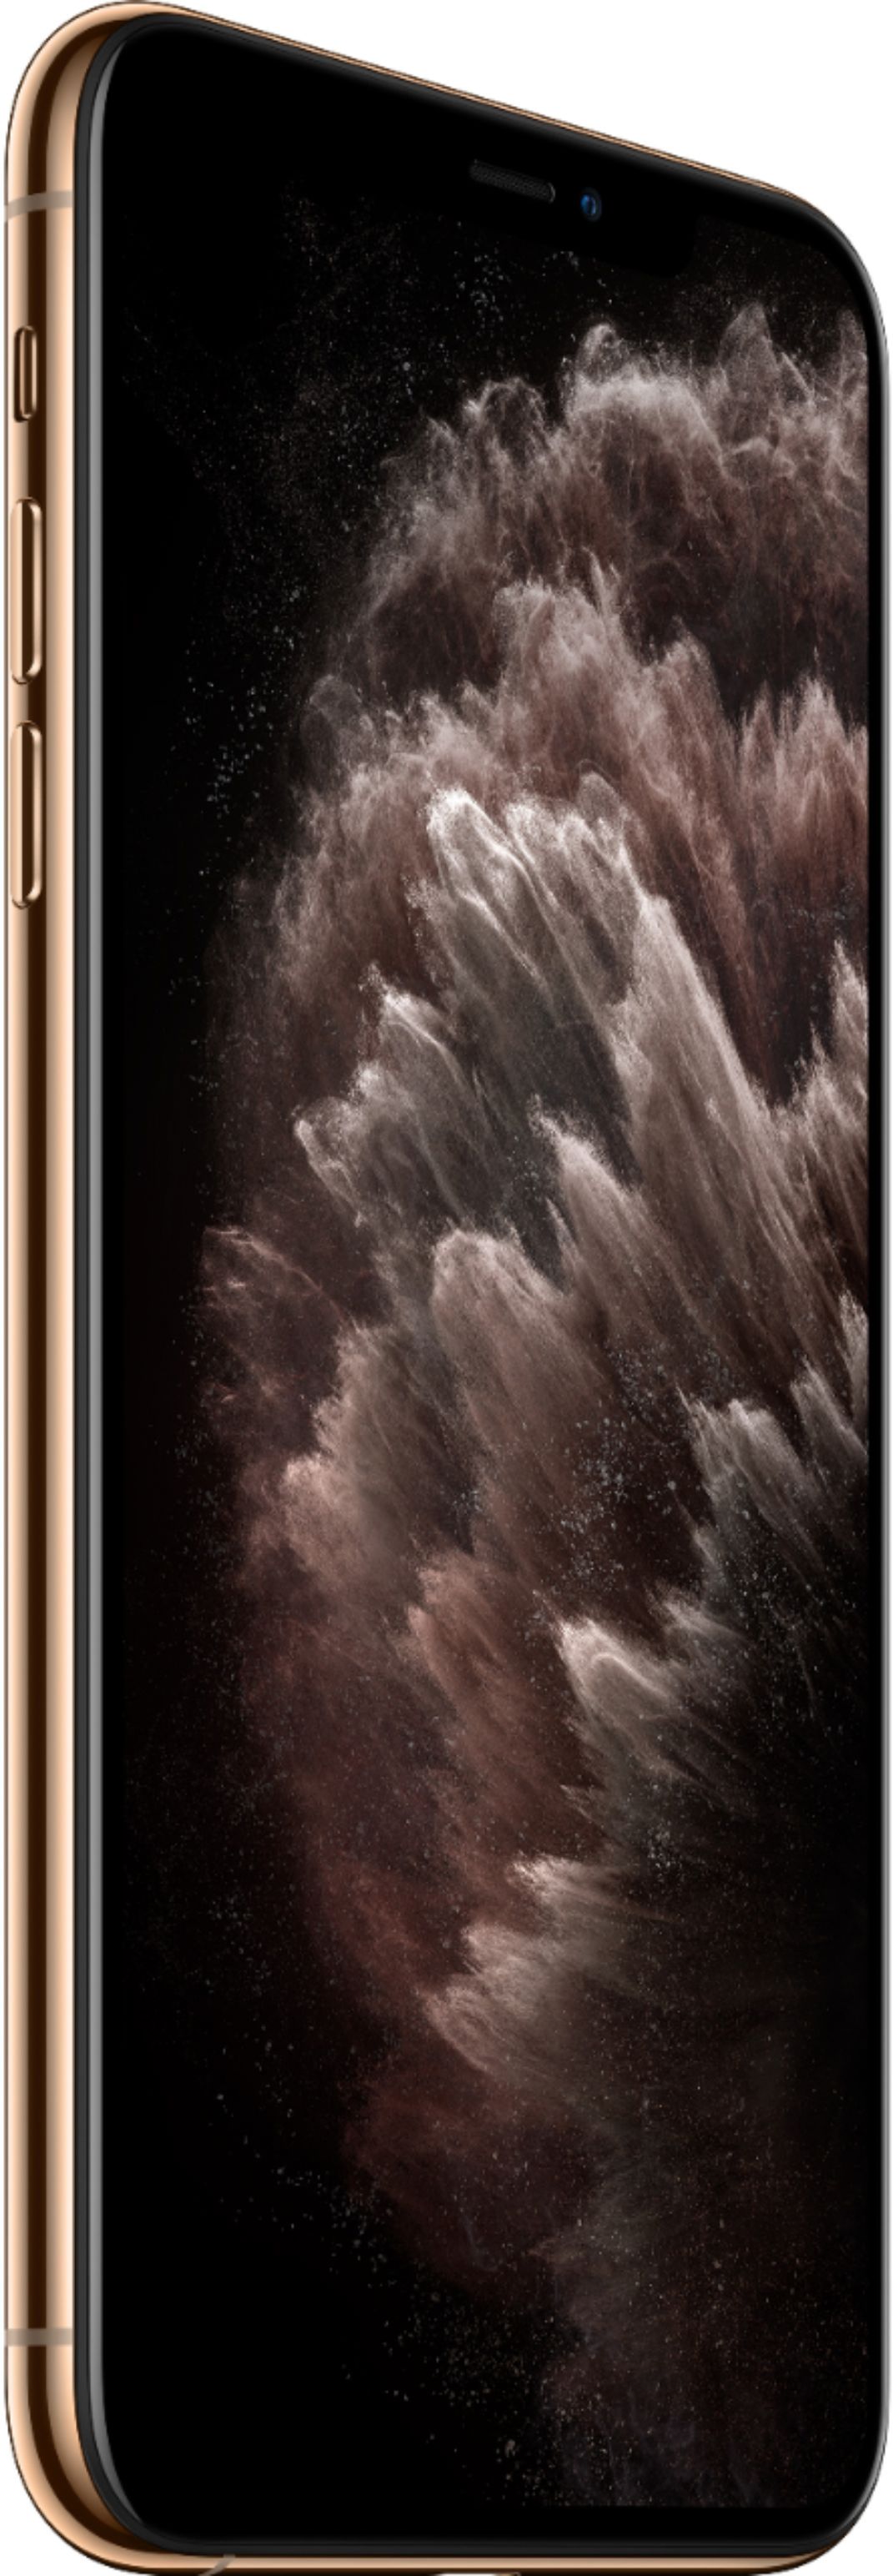 スマートフォン/携帯電話 スマートフォン本体 iPhone 11 Pro Max 64GB ゴールド SIMフリー horizonte.ce.gov.br